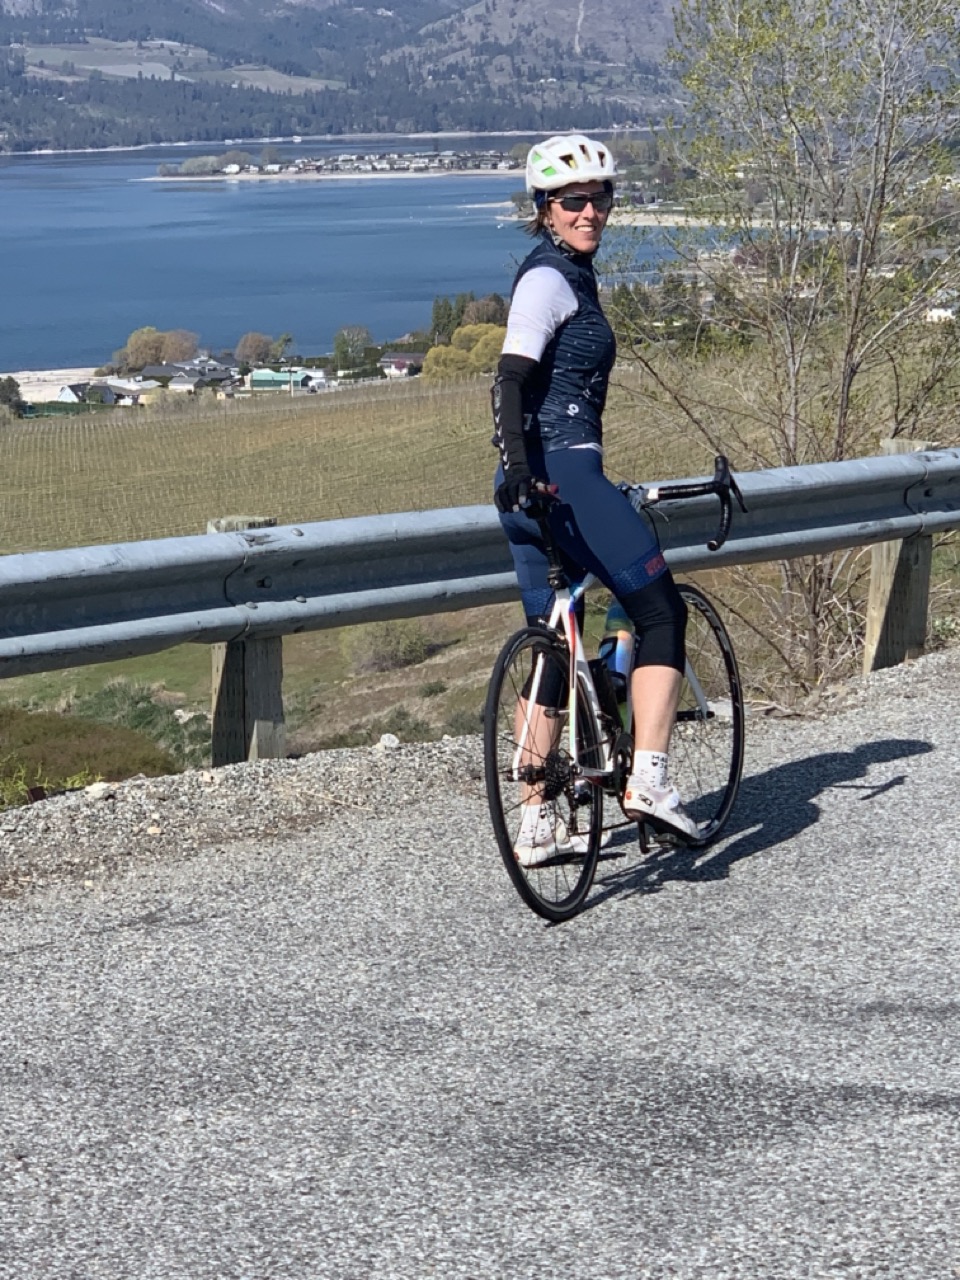 Pam riding around Lake Chelan in Maloja kit.